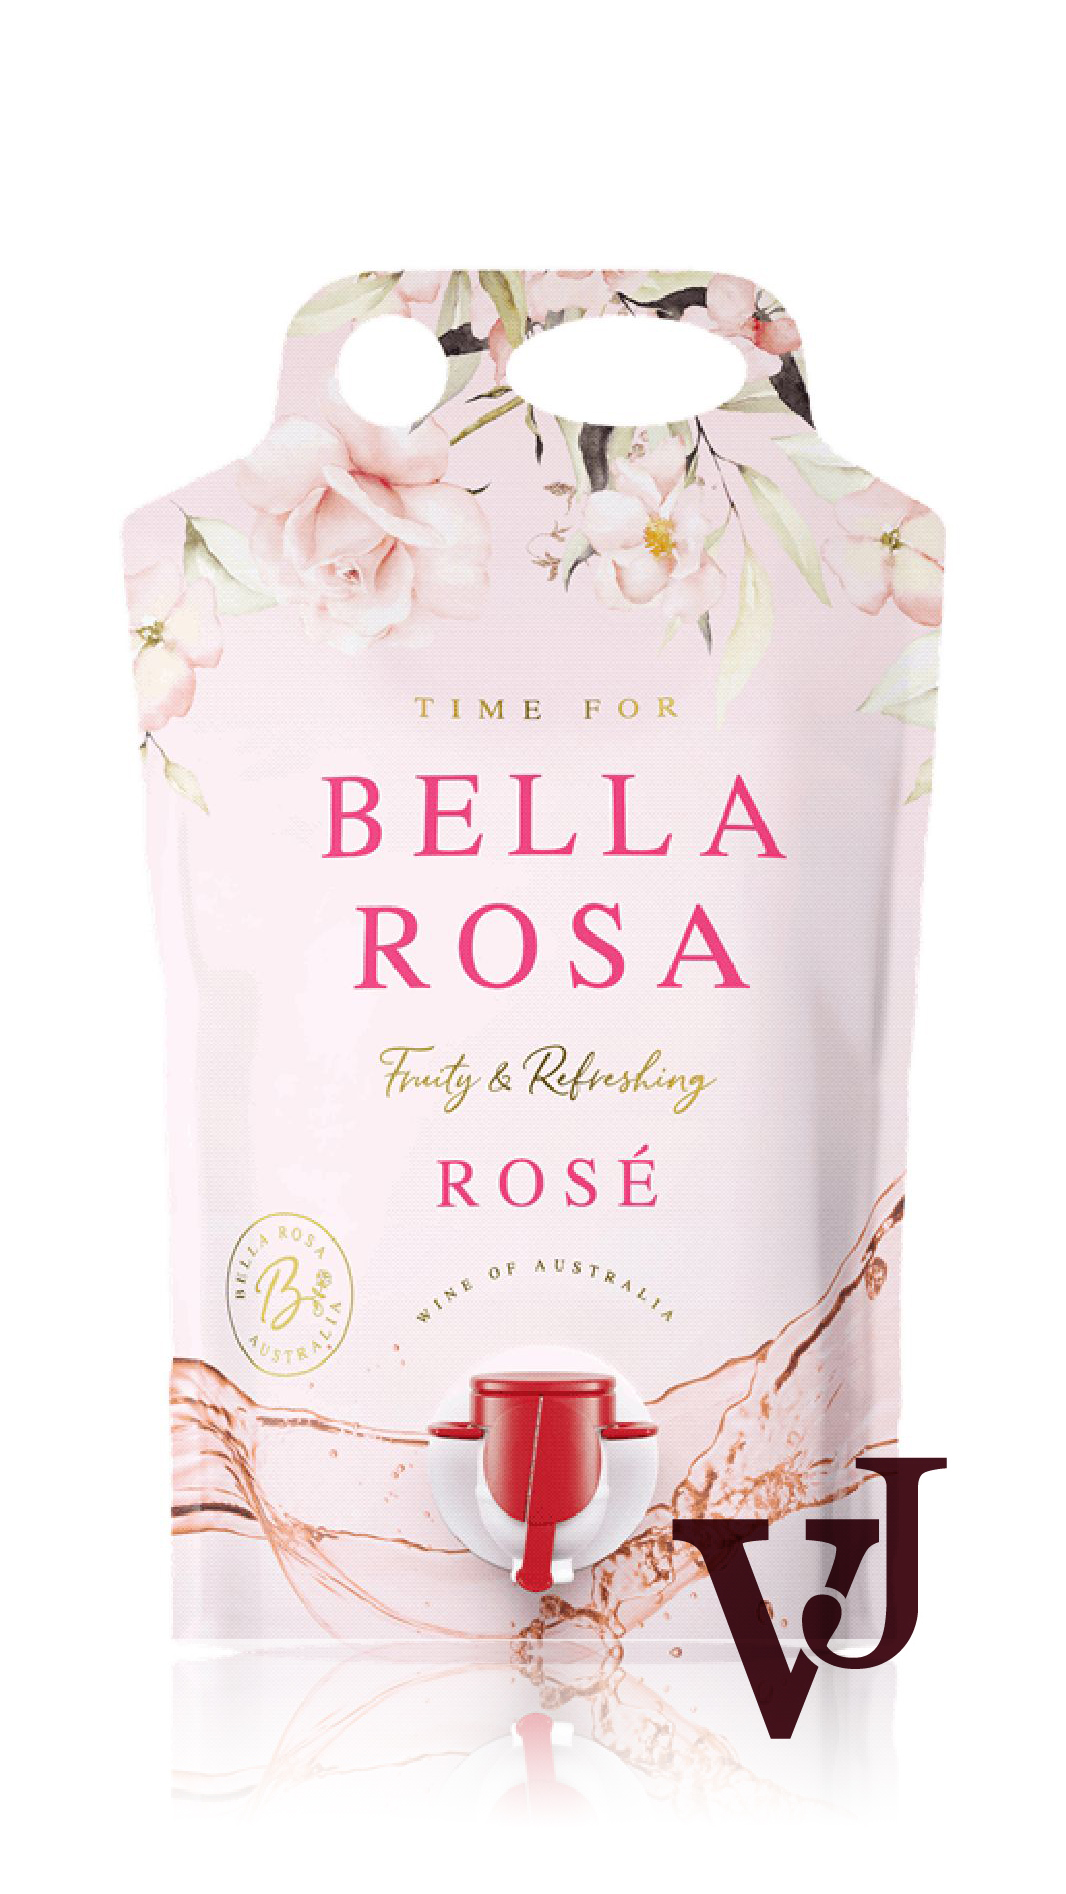 Rosé Vin - Time for Bella Rosa Rosé 2023 artikel nummer 212107 från producenten Carramar Estate från området Australien.